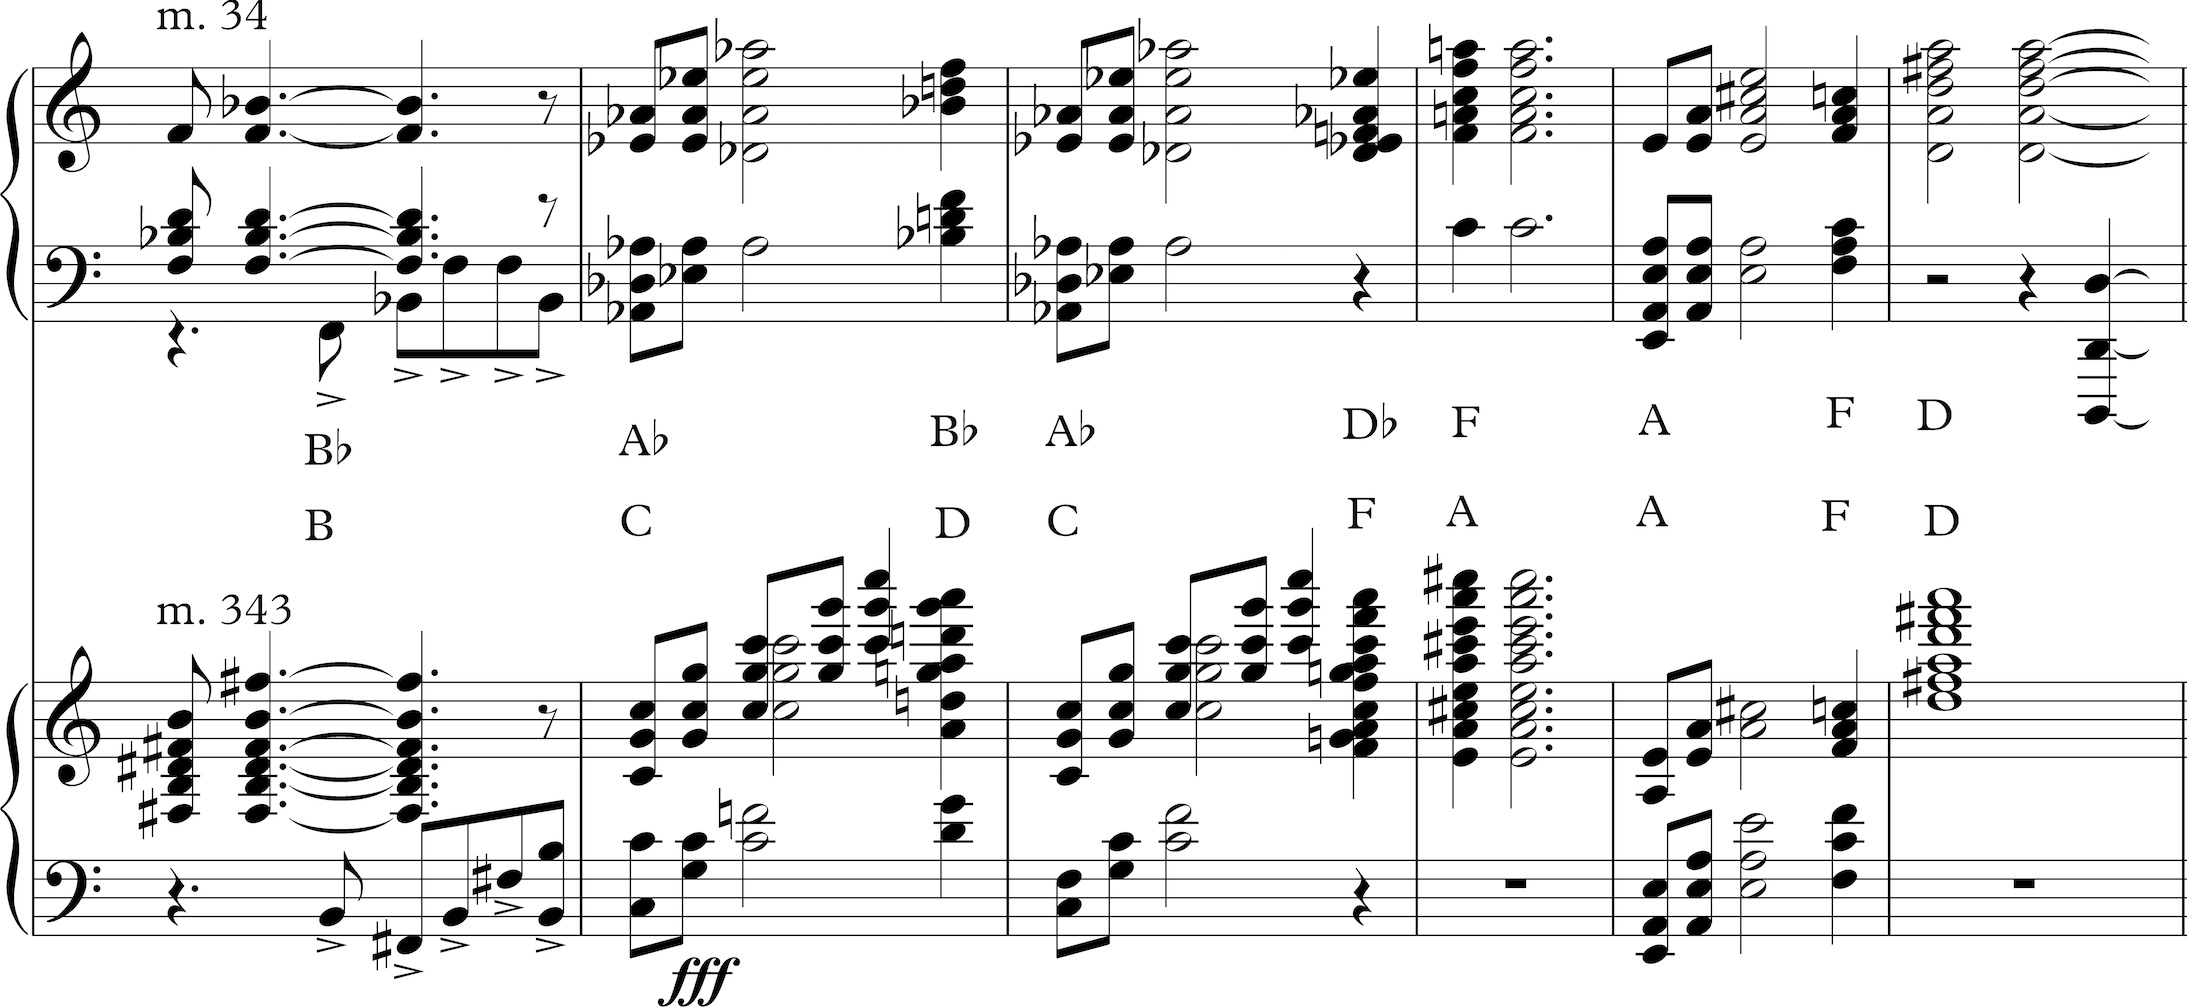 Aaron Copland Symphony No 3